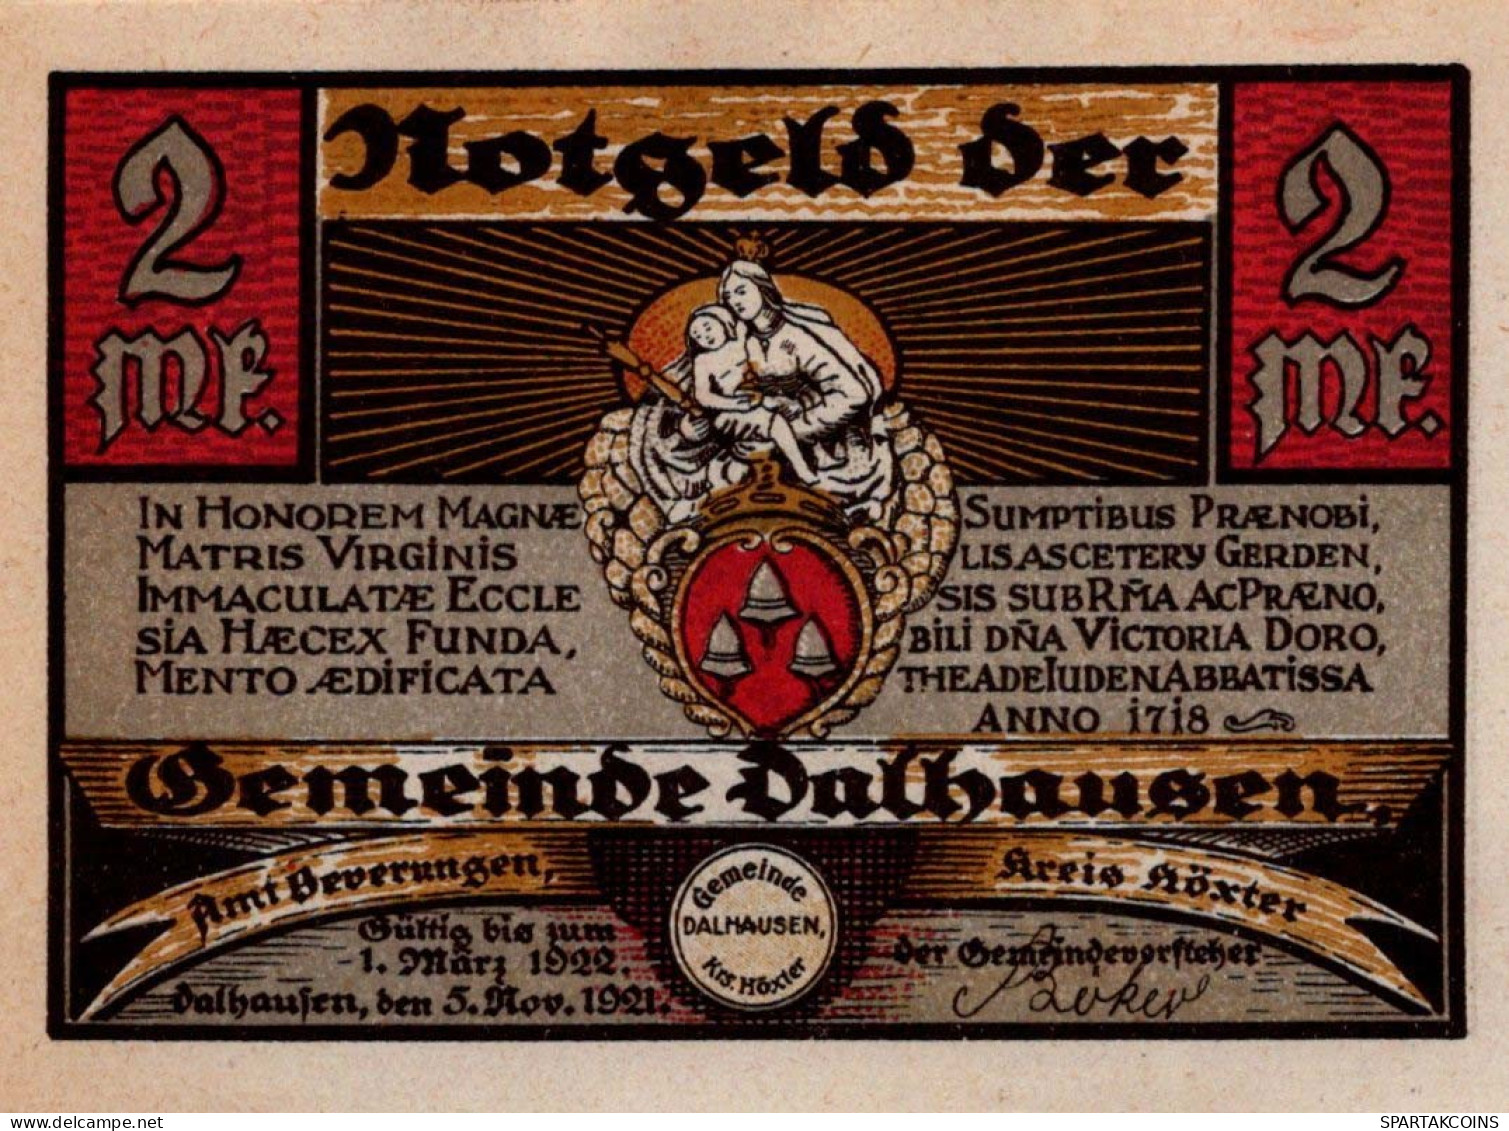 2 MARK 1921 Stadt DALHAUSEN Westphalia UNC DEUTSCHLAND Notgeld Banknote #PI069 - [11] Emissions Locales